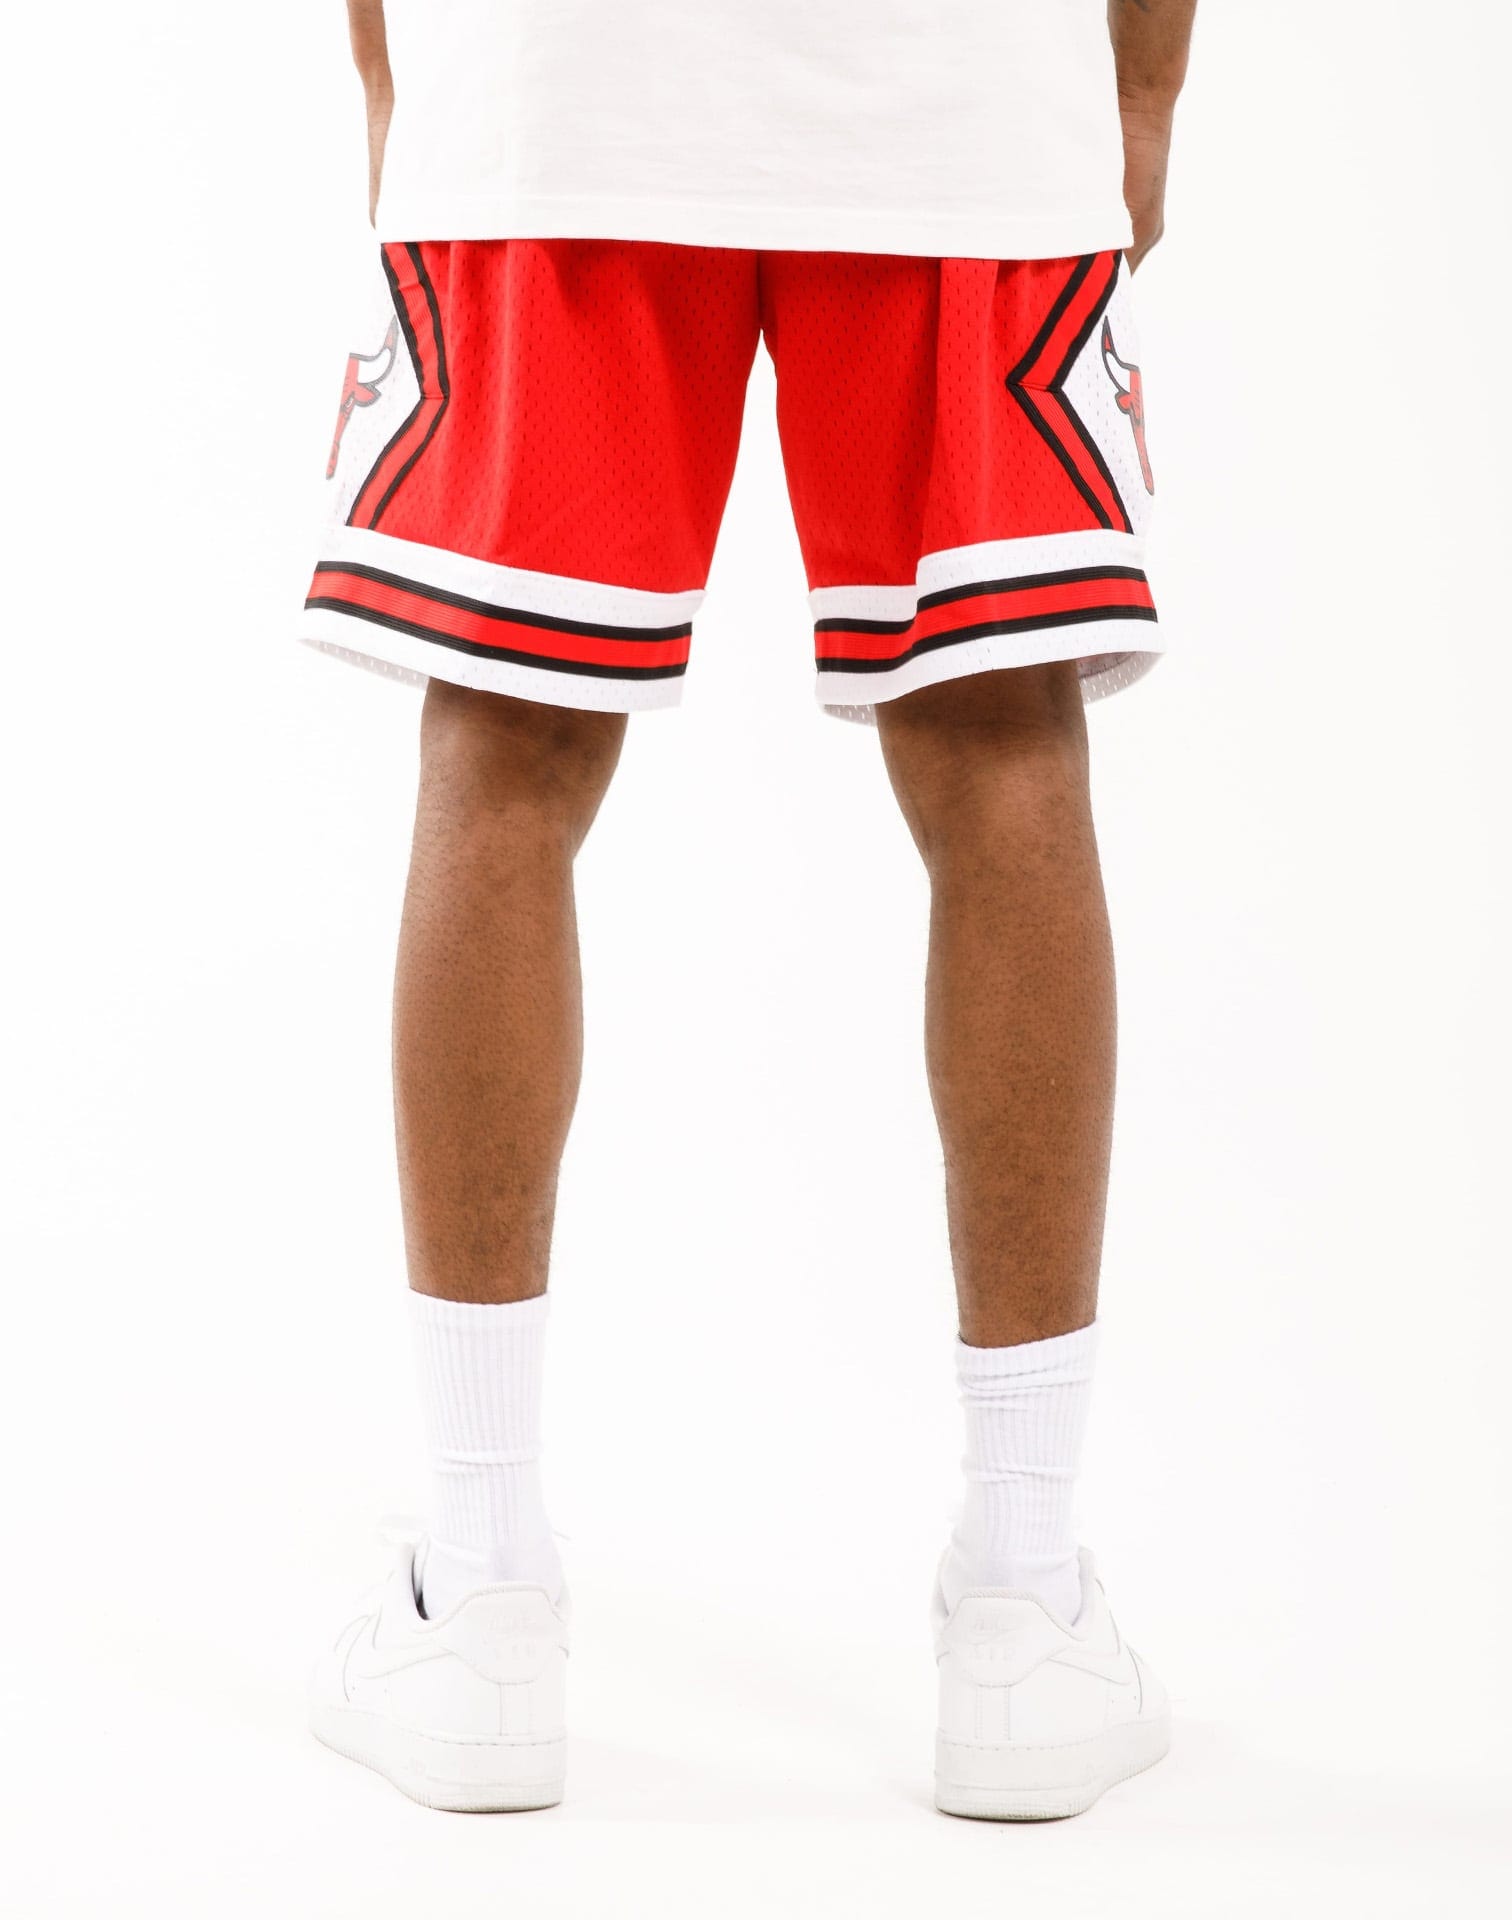 Mitchell Ness Chicago Bulls Swingman Shorts –